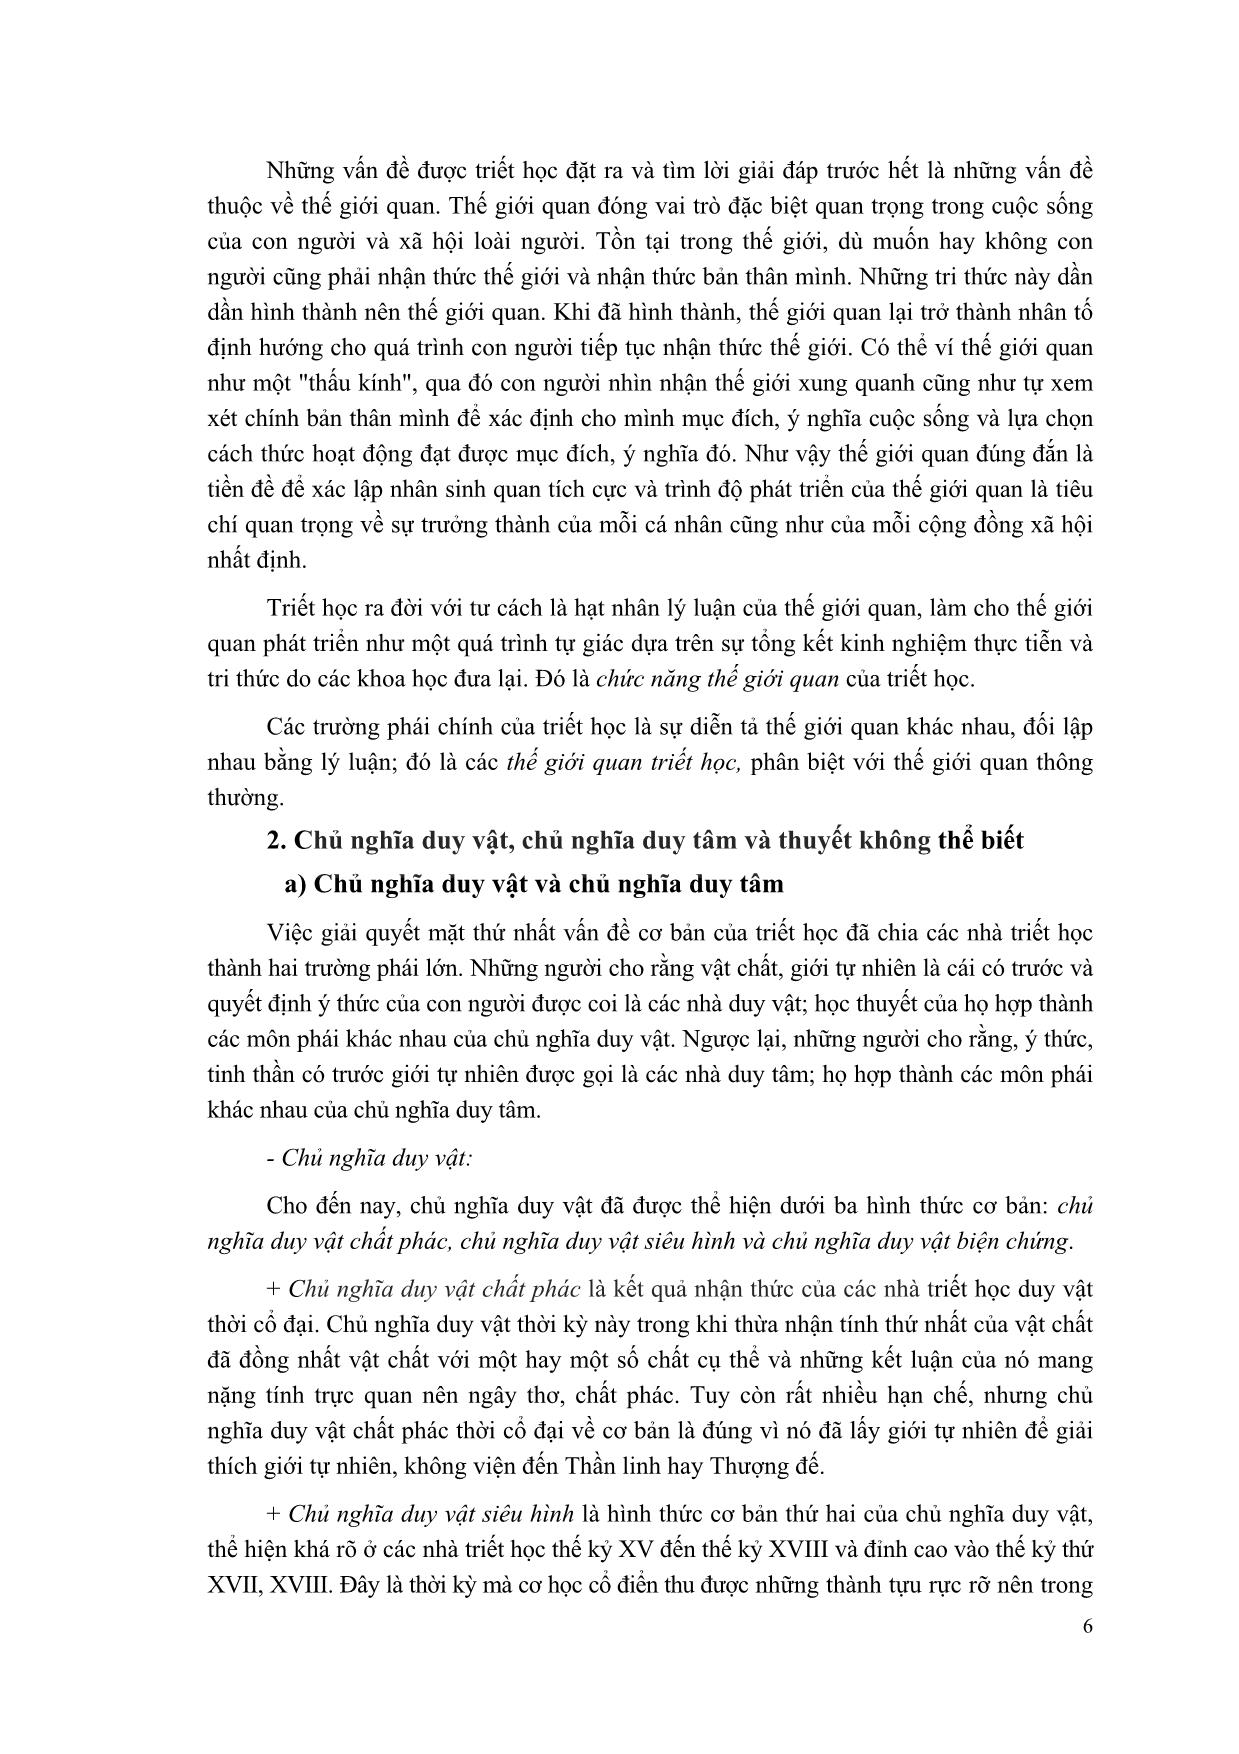 Giáo trình Triết học Mác-Lênin (Mới) trang 7